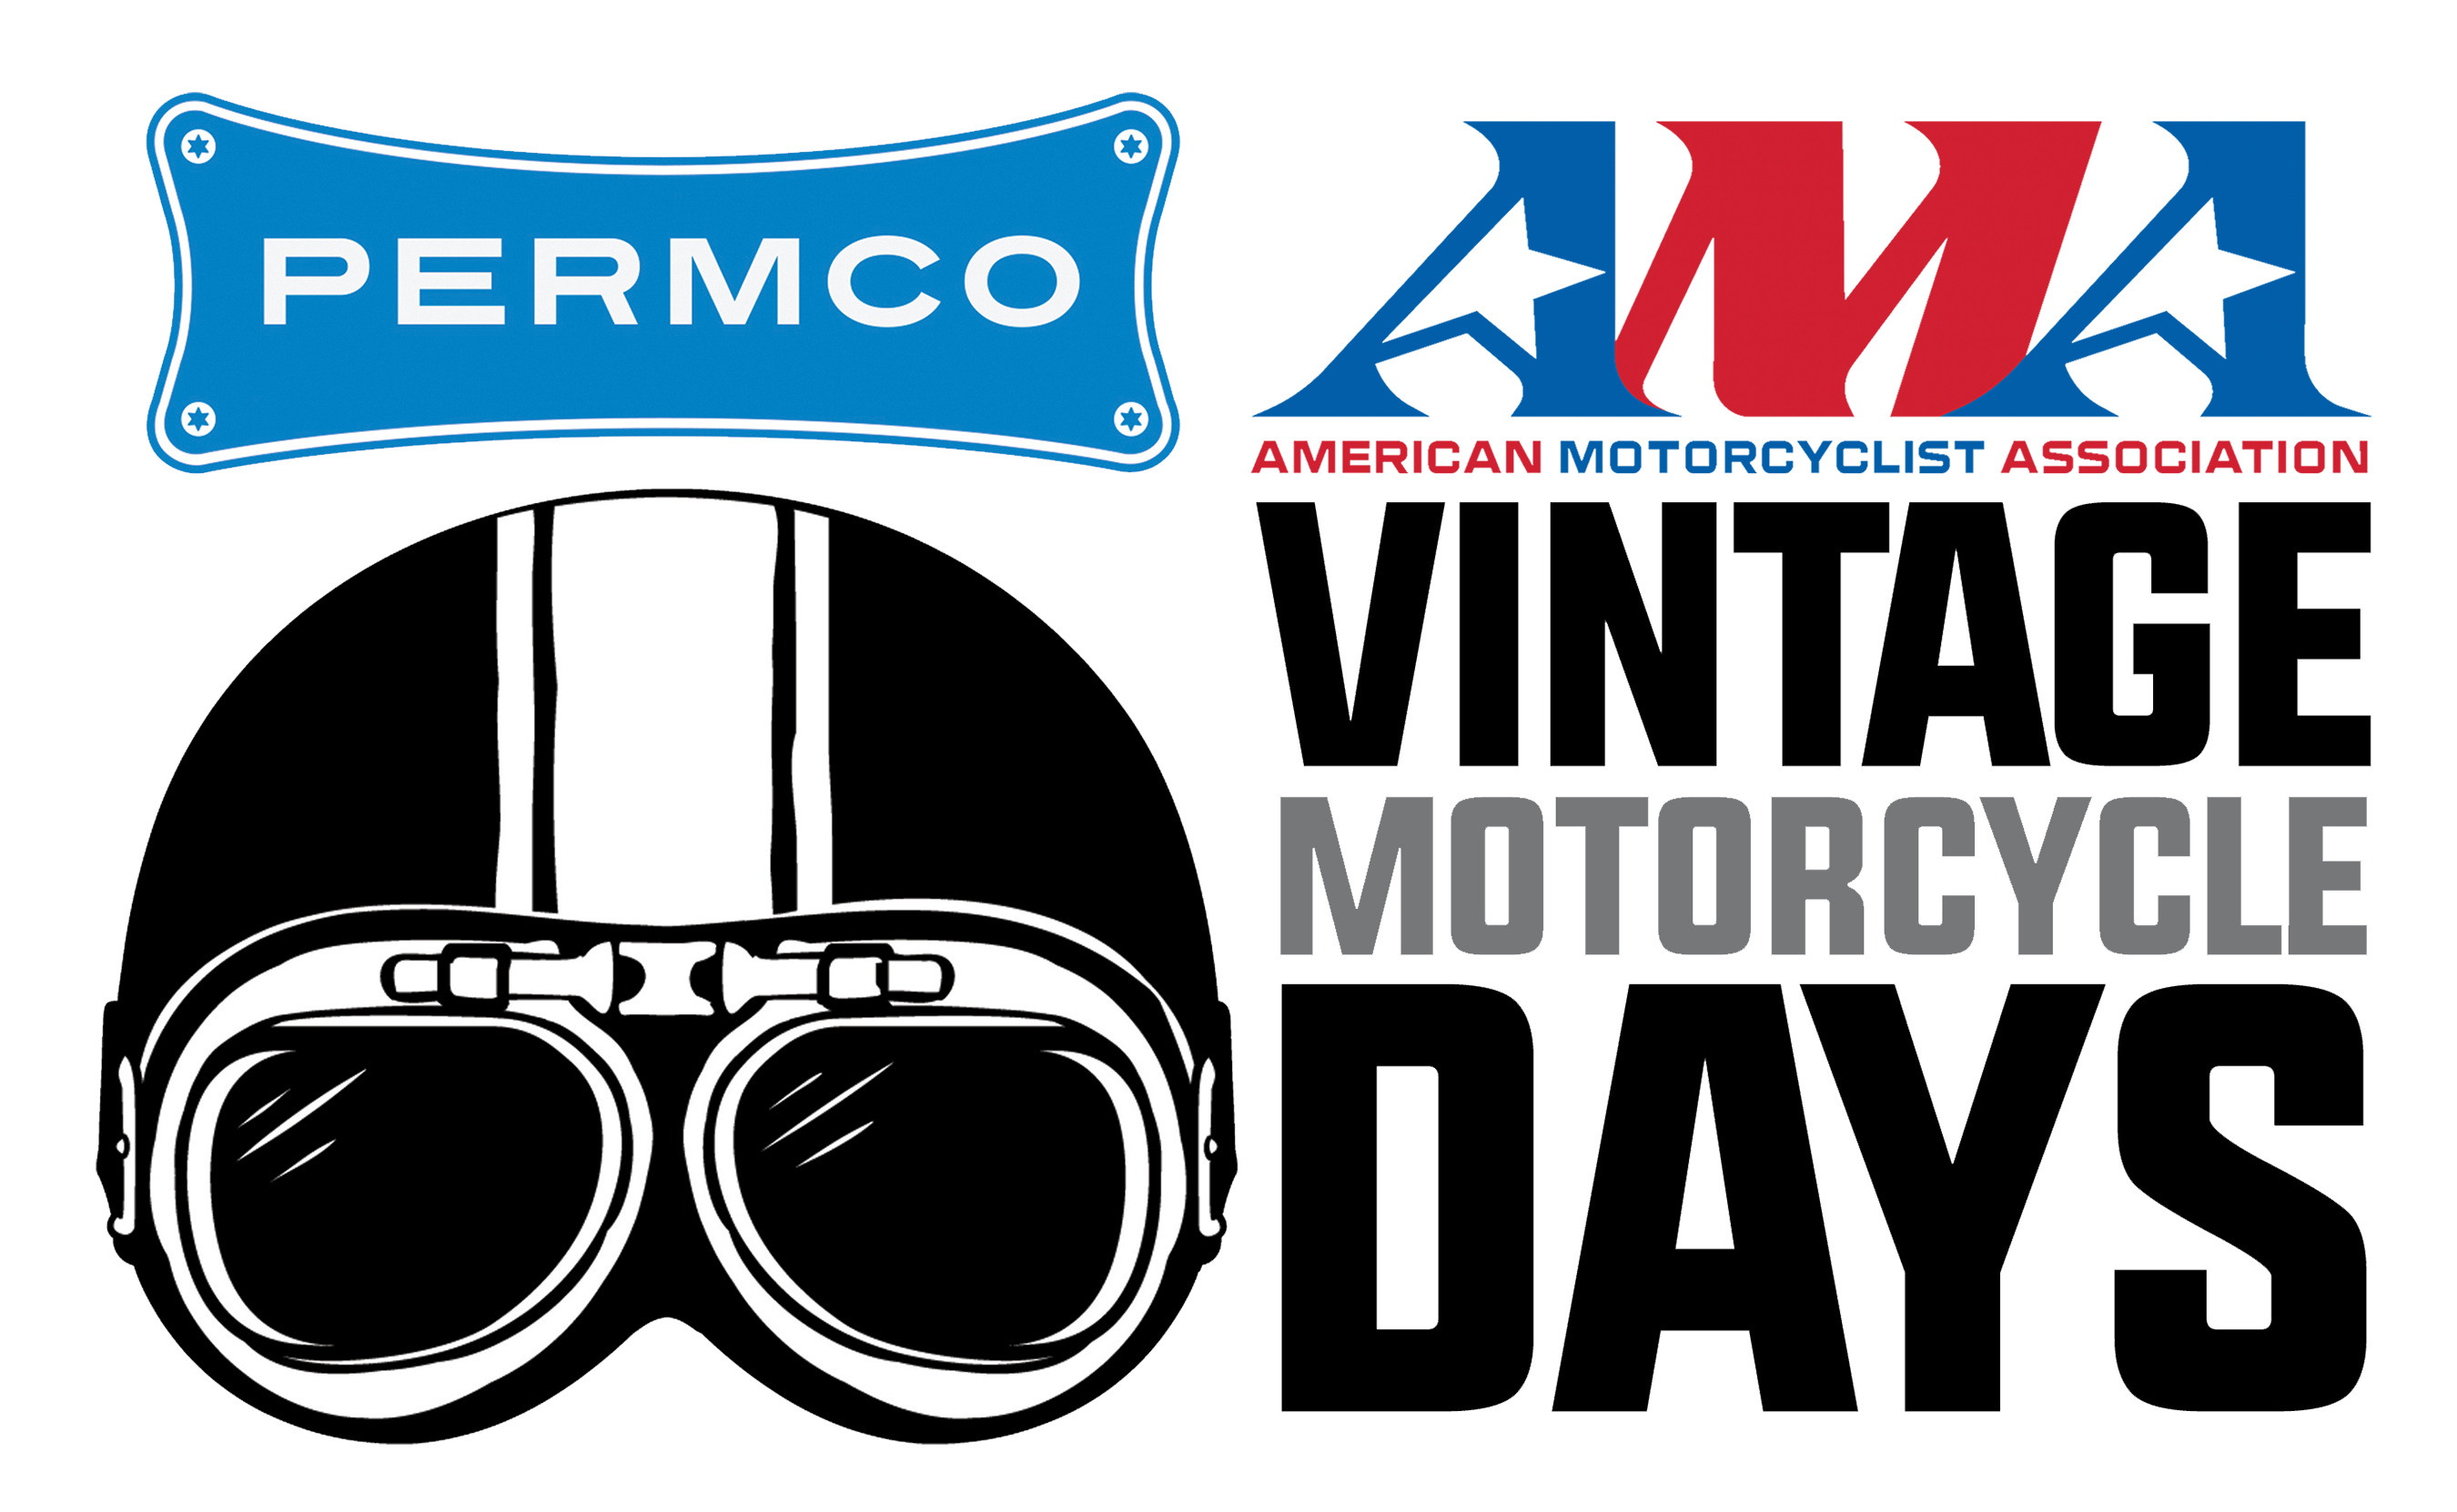 Vintage Motorcycle Days Logo